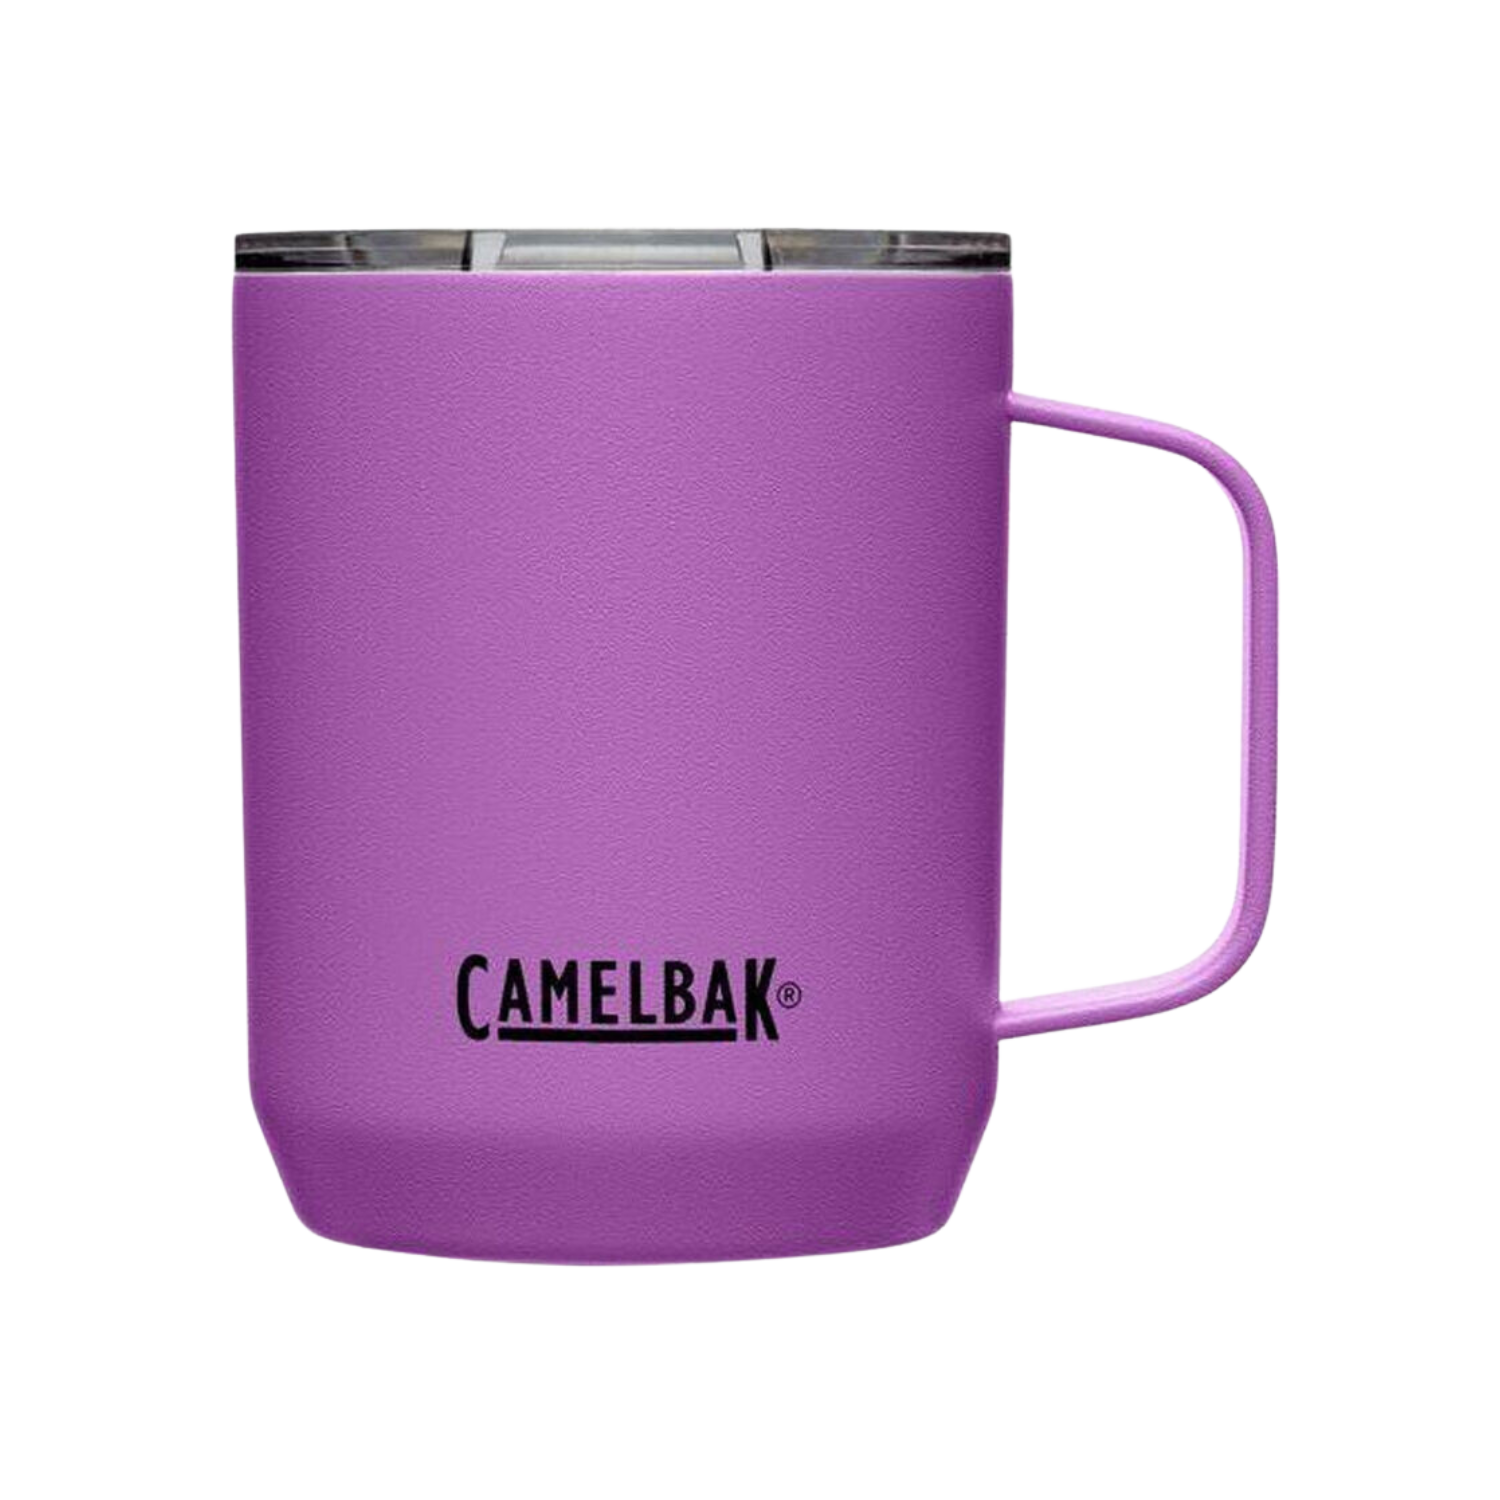 Camelbak Stainless Steel Camp Mug 12oz